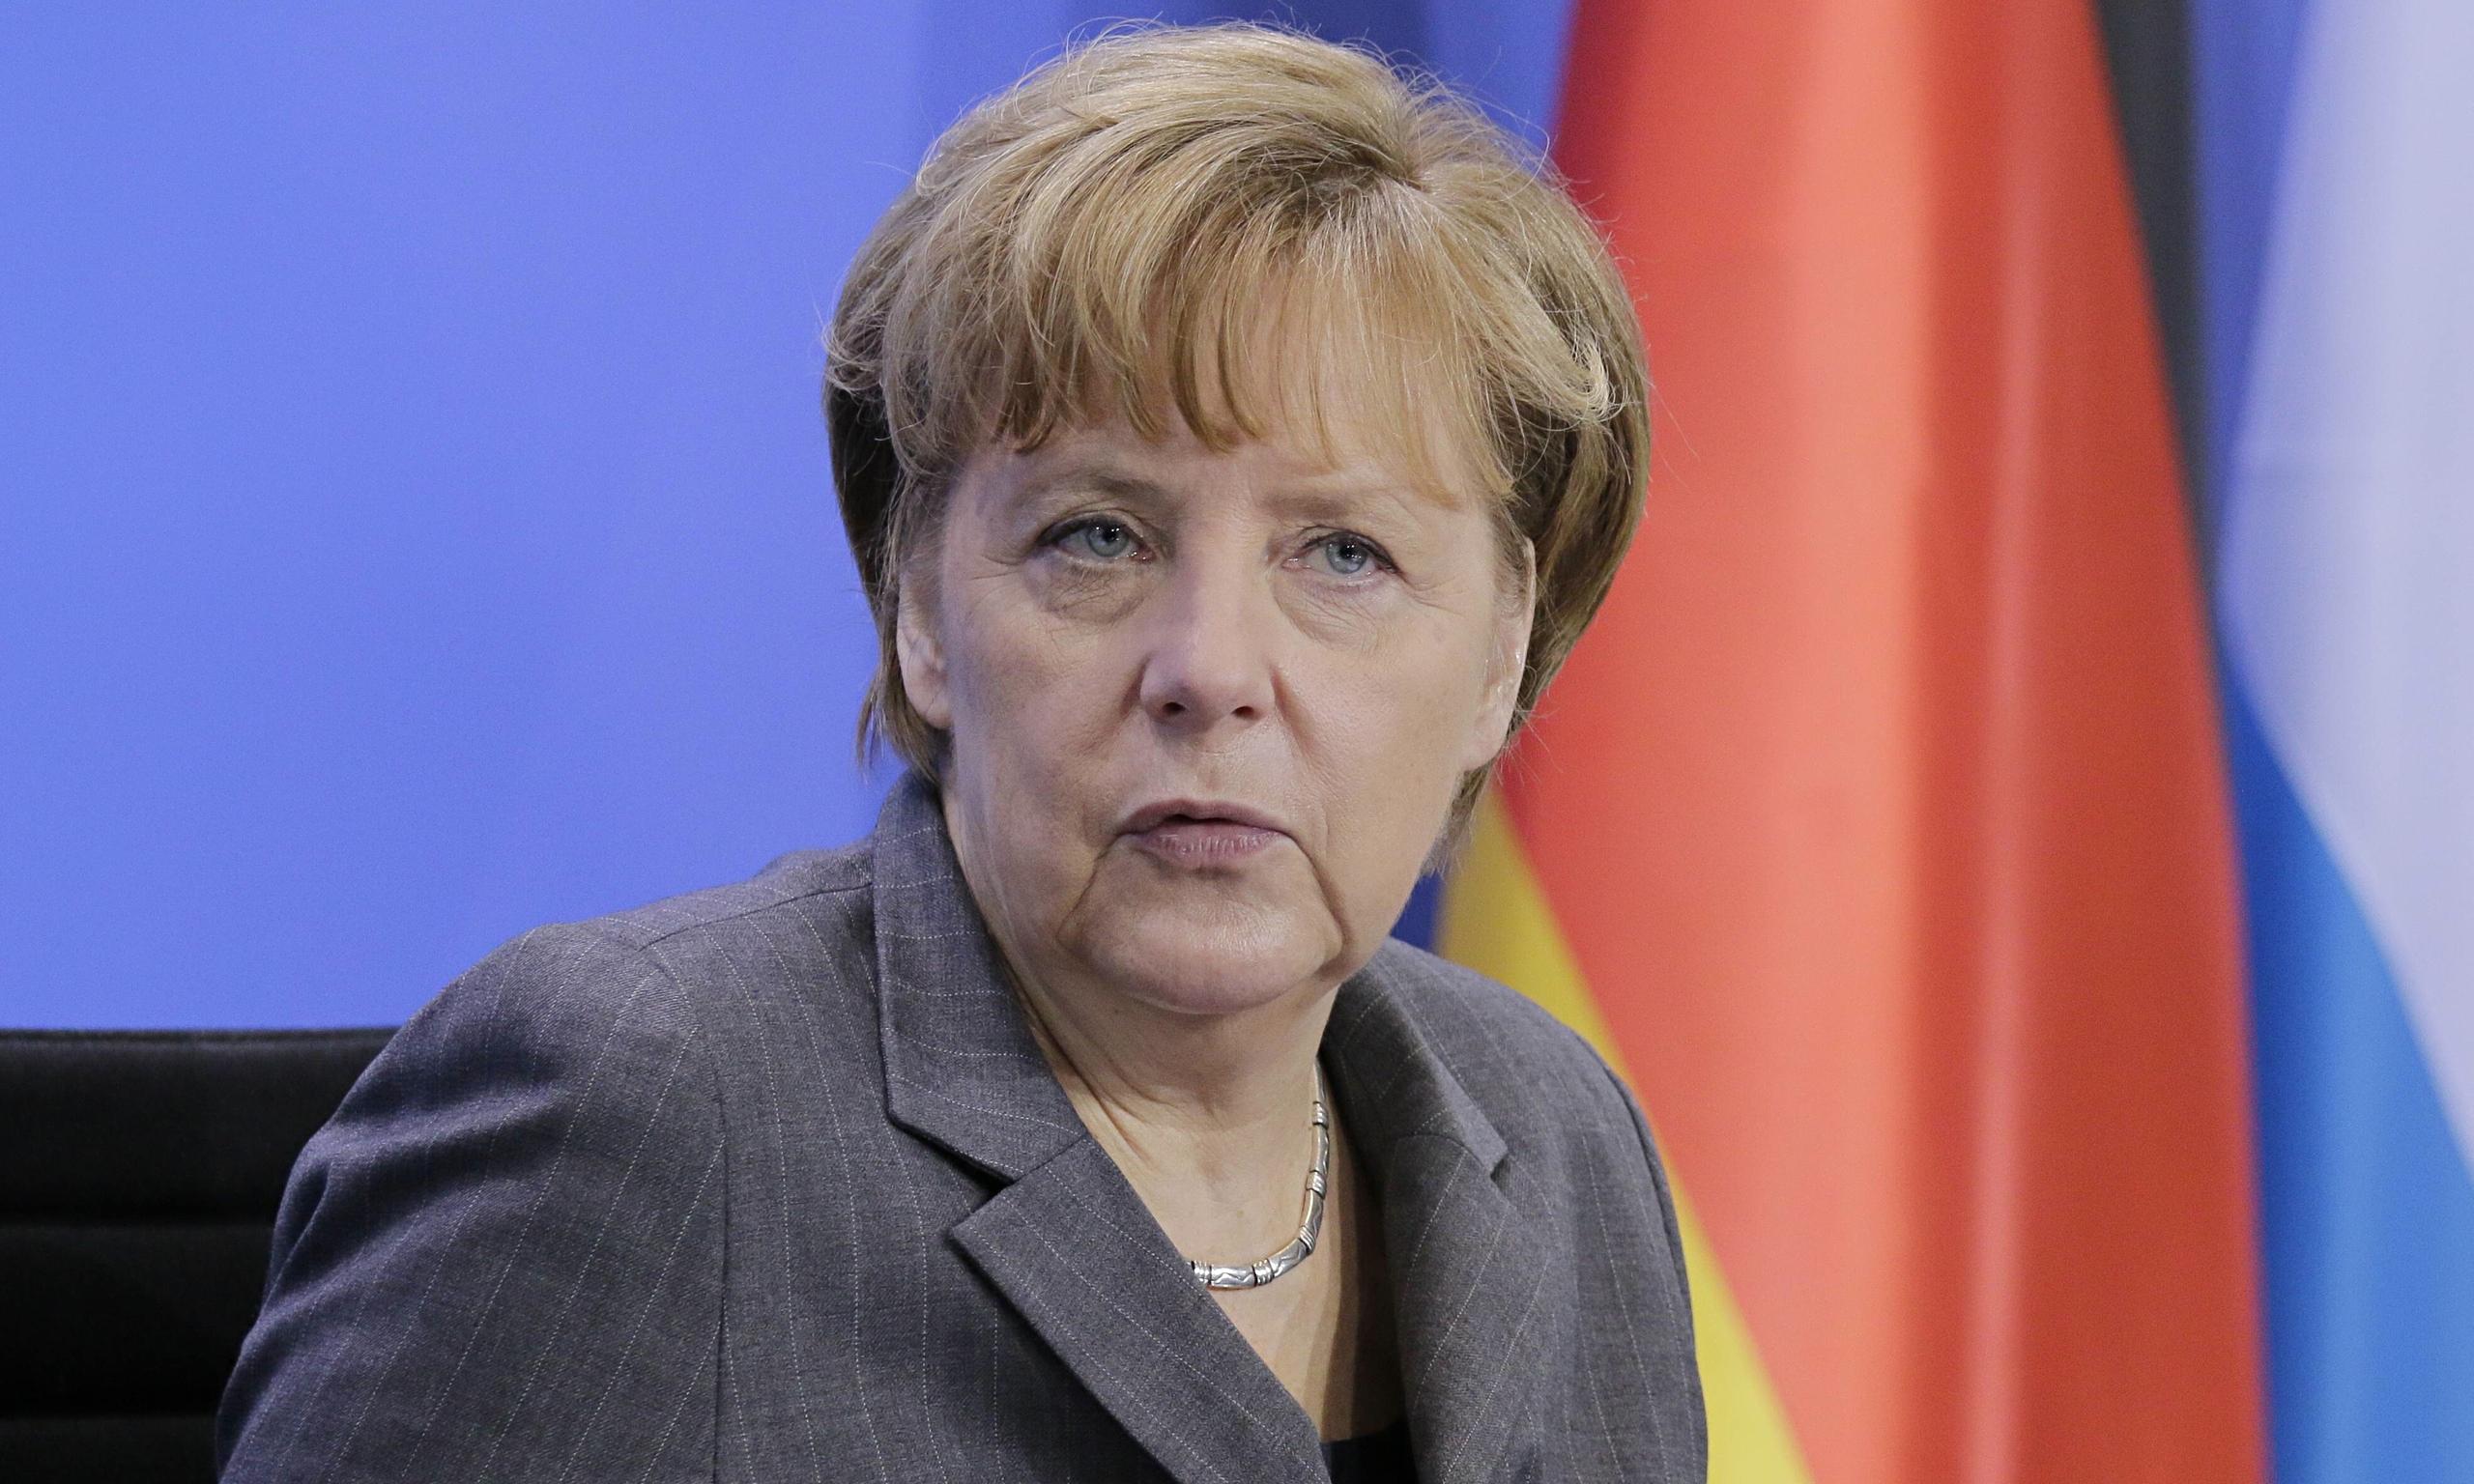 Angela Merkel o Balkanu: Pozitivni primjeri dijaloga, ali put je i dalje pun kamenja